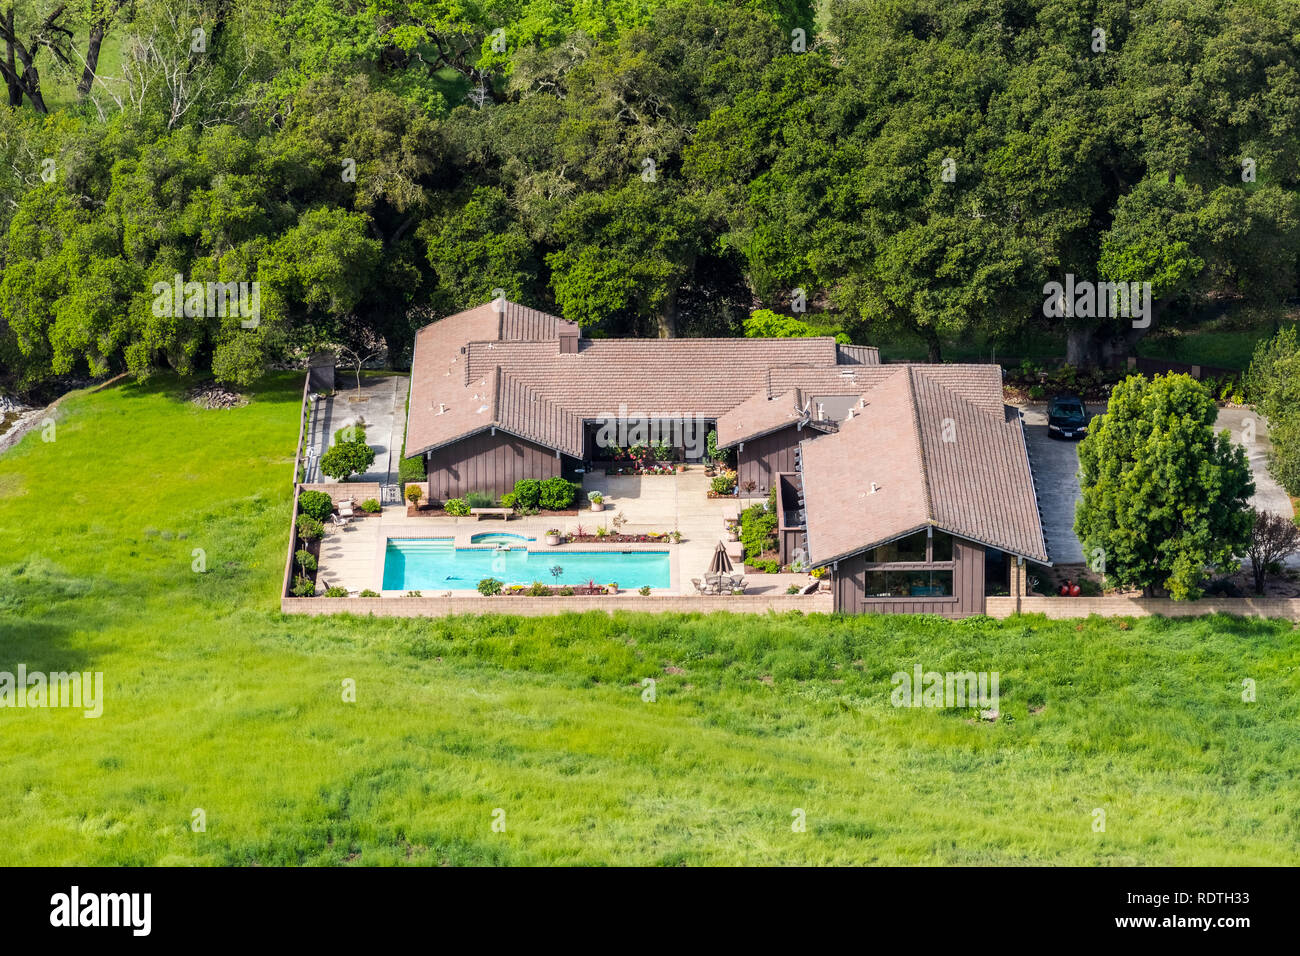 Luftaufnahme von großen Haus mit Pool umgeben von Bäumen und grünen Wiesen umgeben, San Jose, Santa Clara County, South San Francisco Bay Area, Kalifornien Stockfoto